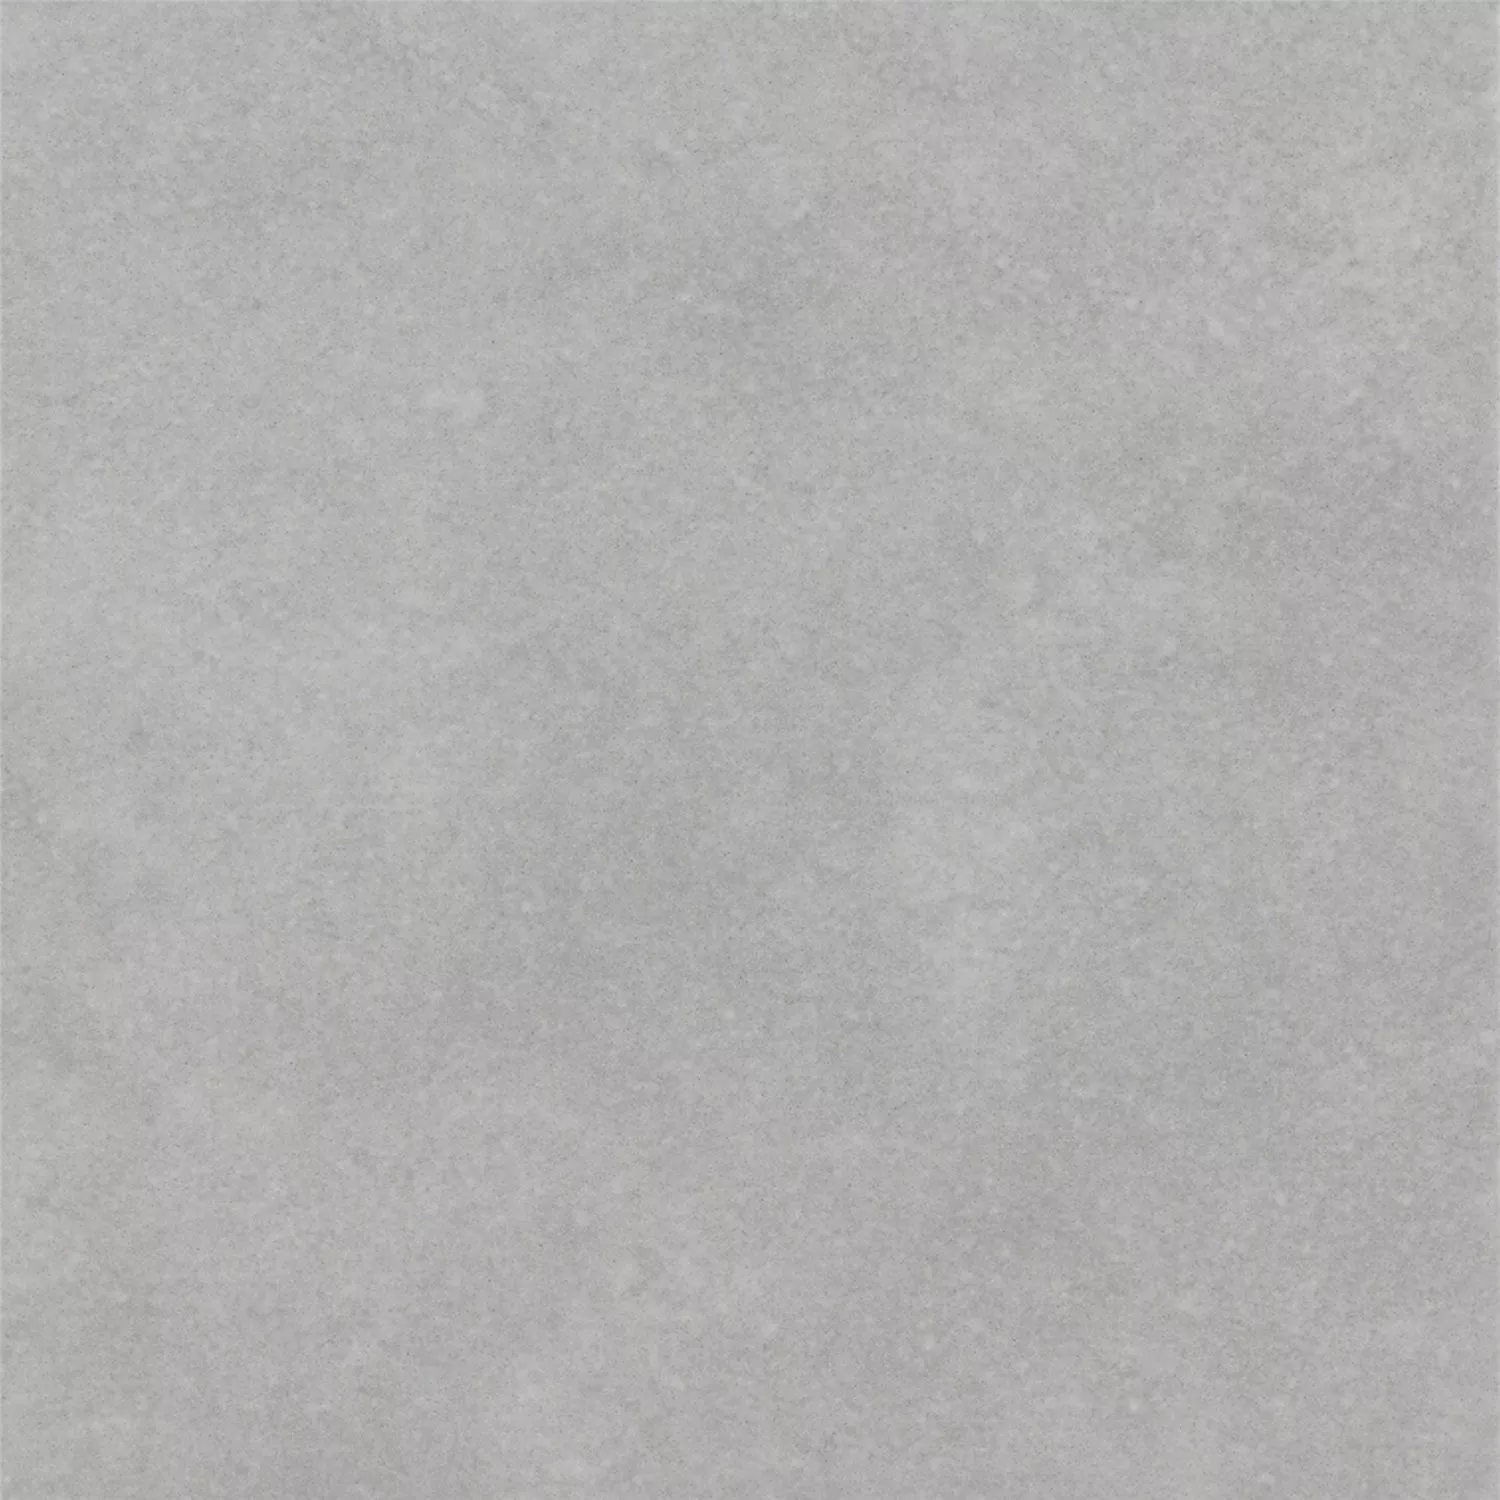 Πρότυπο Όψη Πλακιδίων Tσιμέντου Gotik Πλακάκι Bάσης Γκρί 22,3x22,3cm